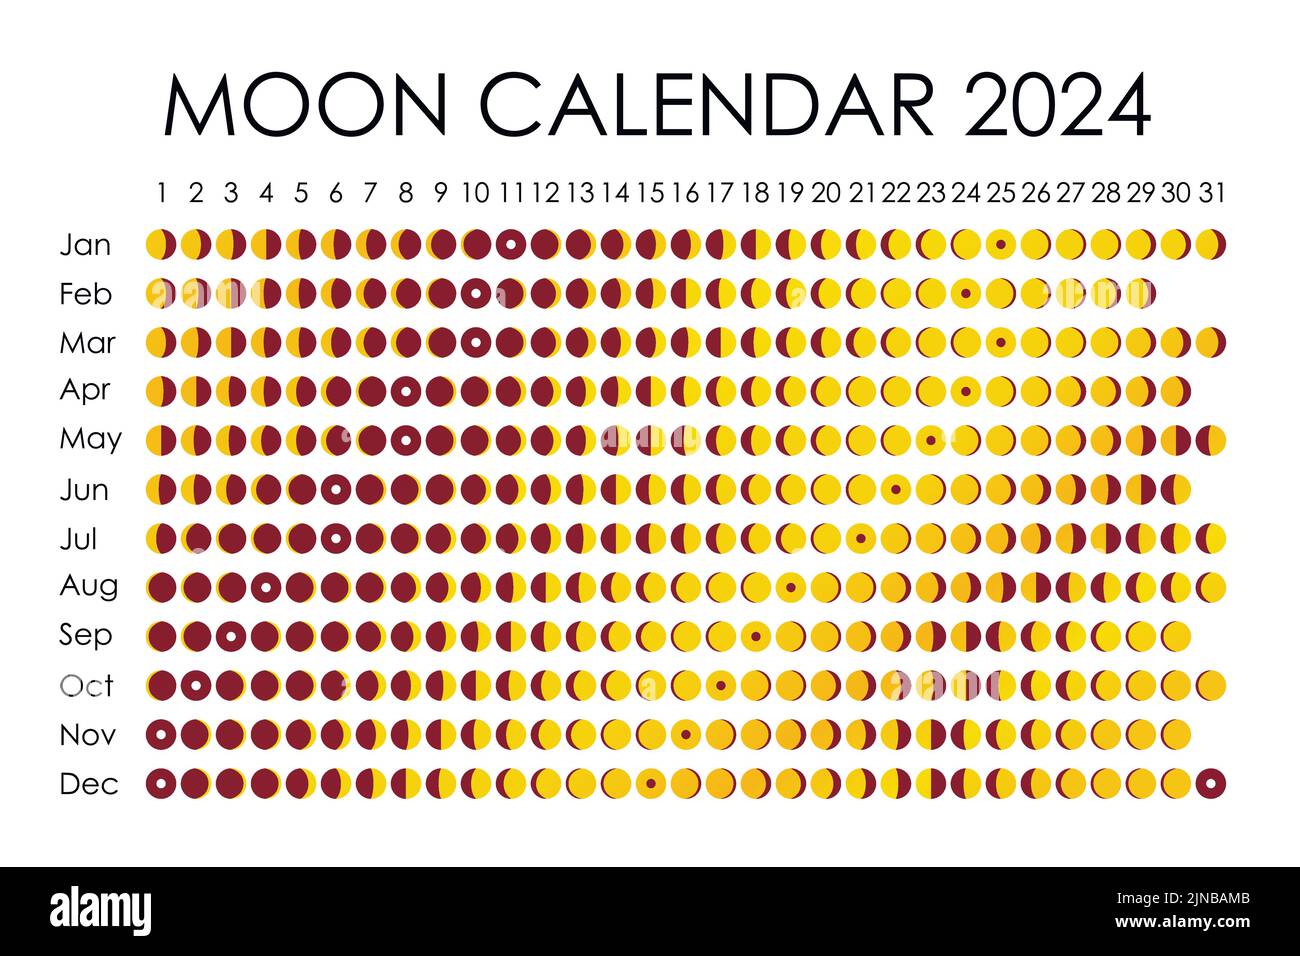 2024 Cat Calendar, Spirit Cats, Moon Phase & Astrological Calendar